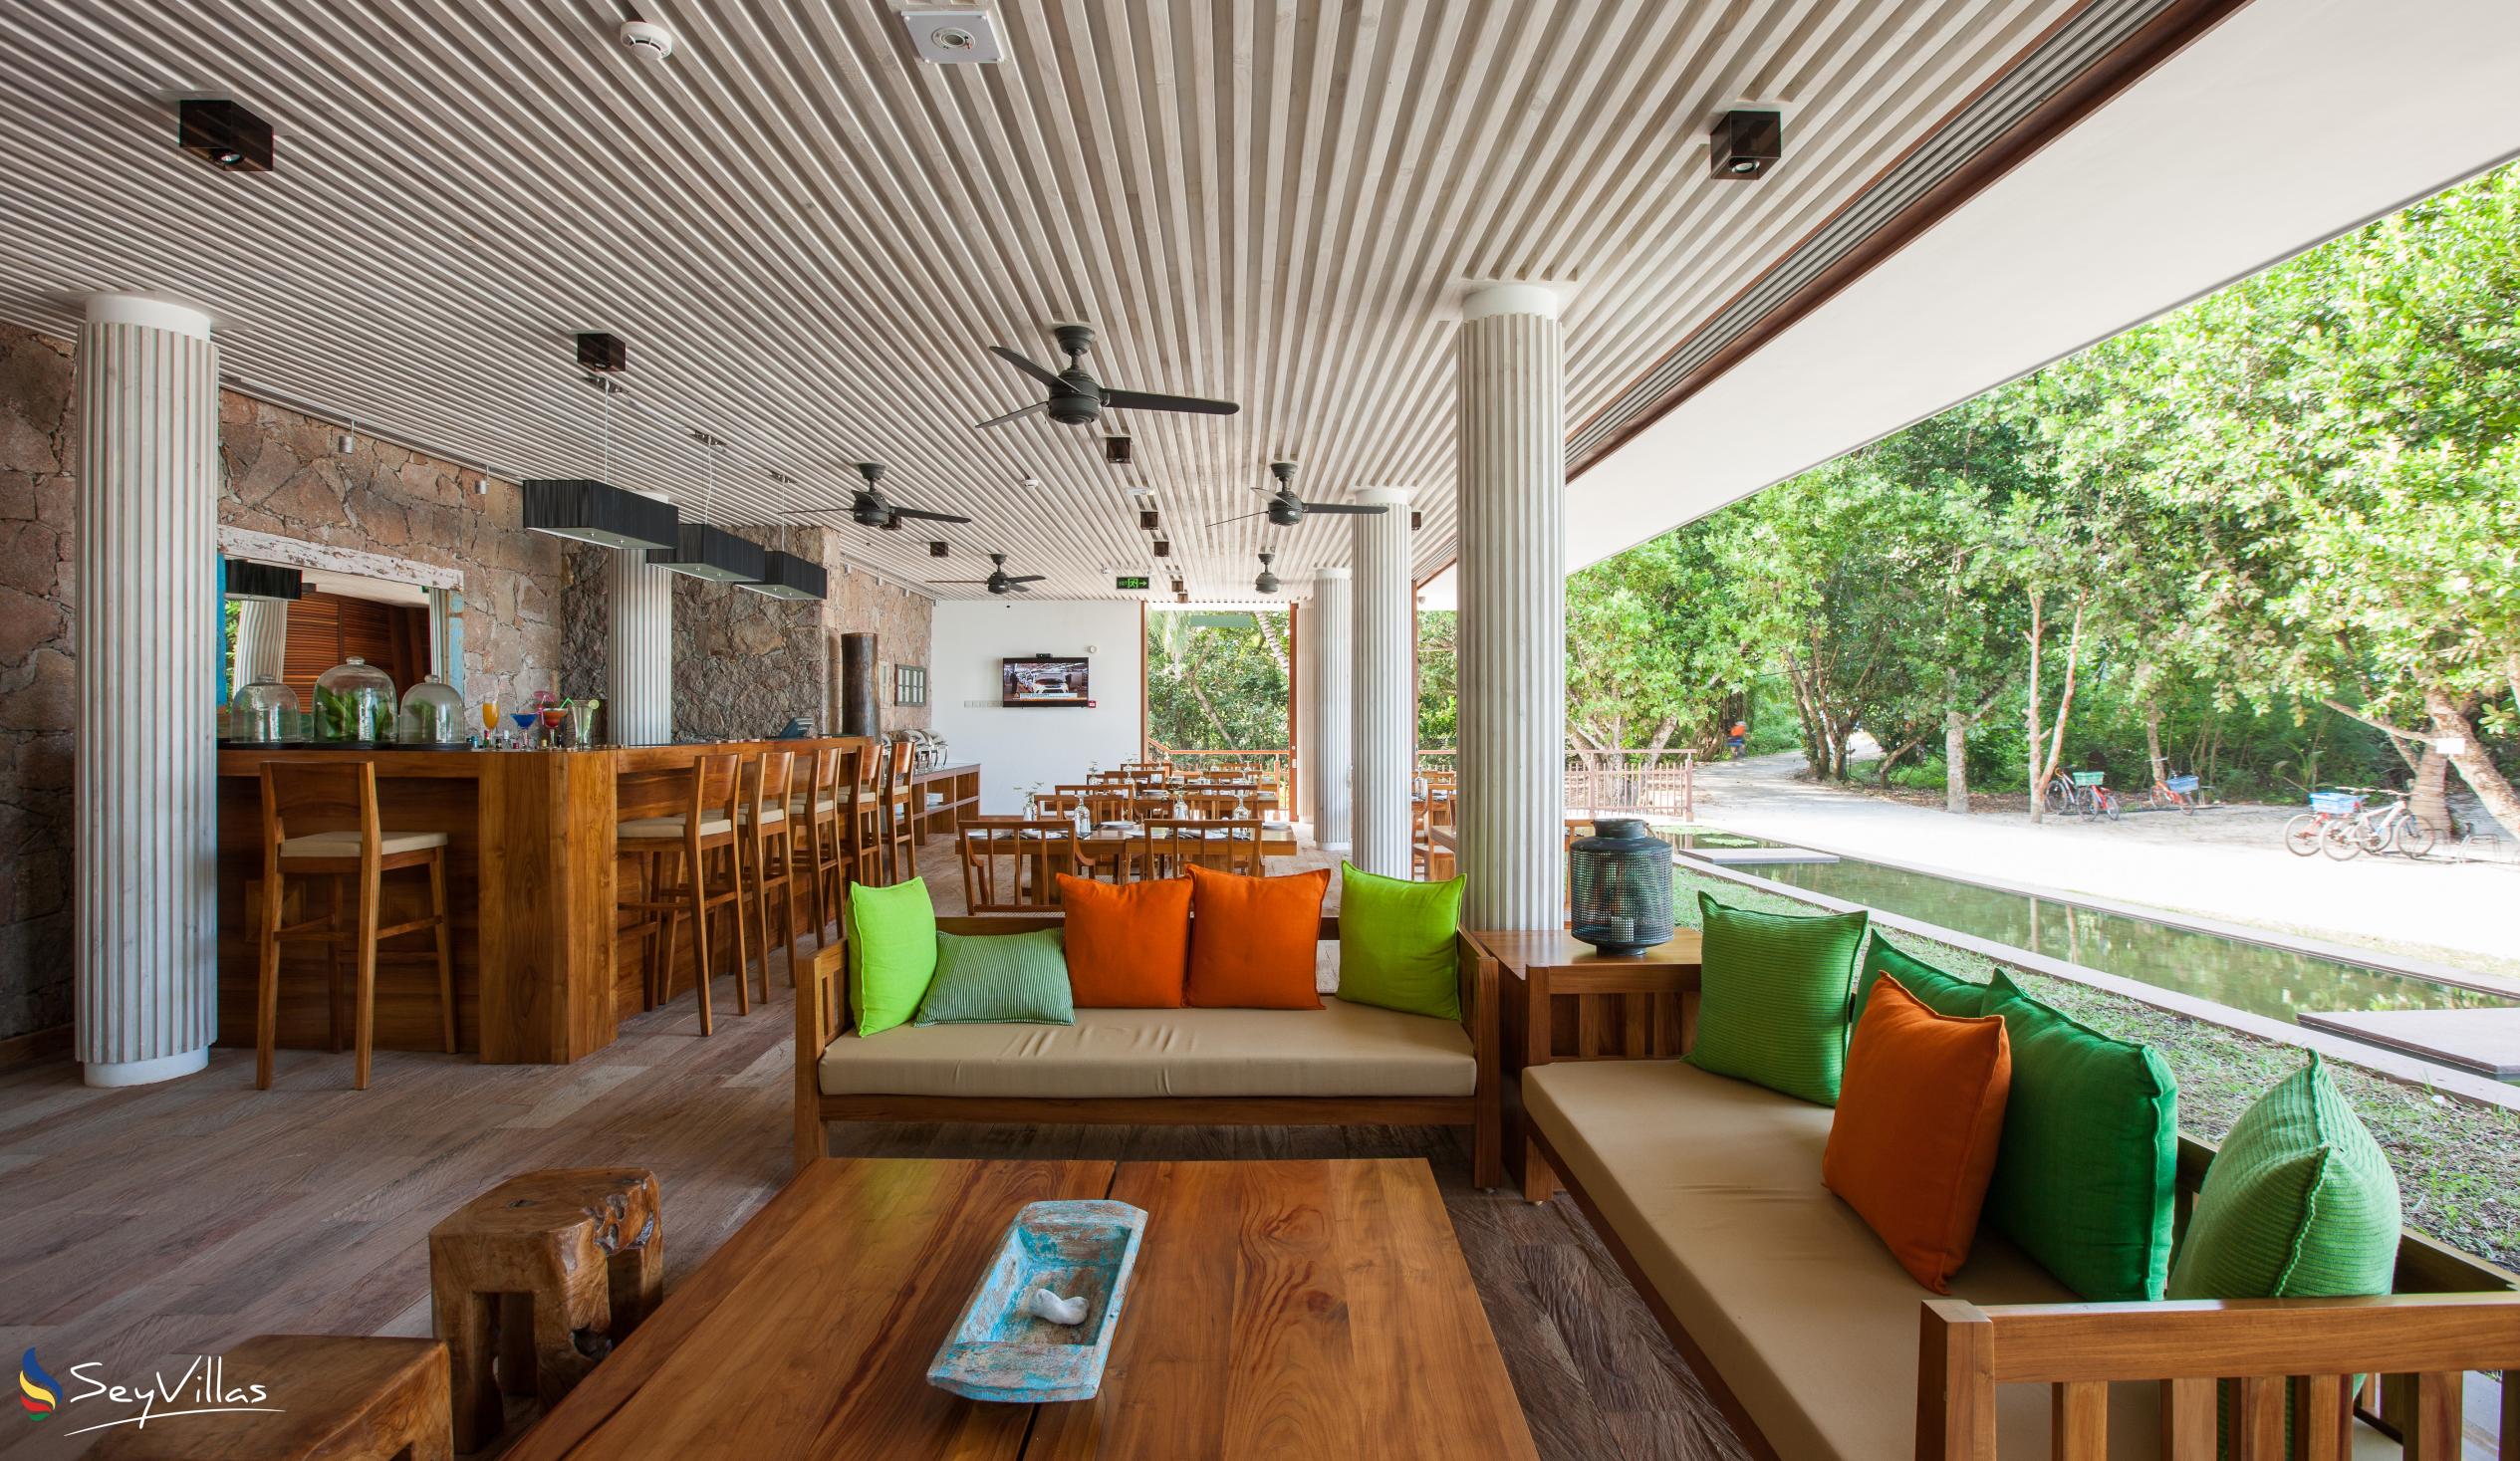 Foto 11: Le Relax Luxury Lodge - Innenbereich - La Digue (Seychellen)